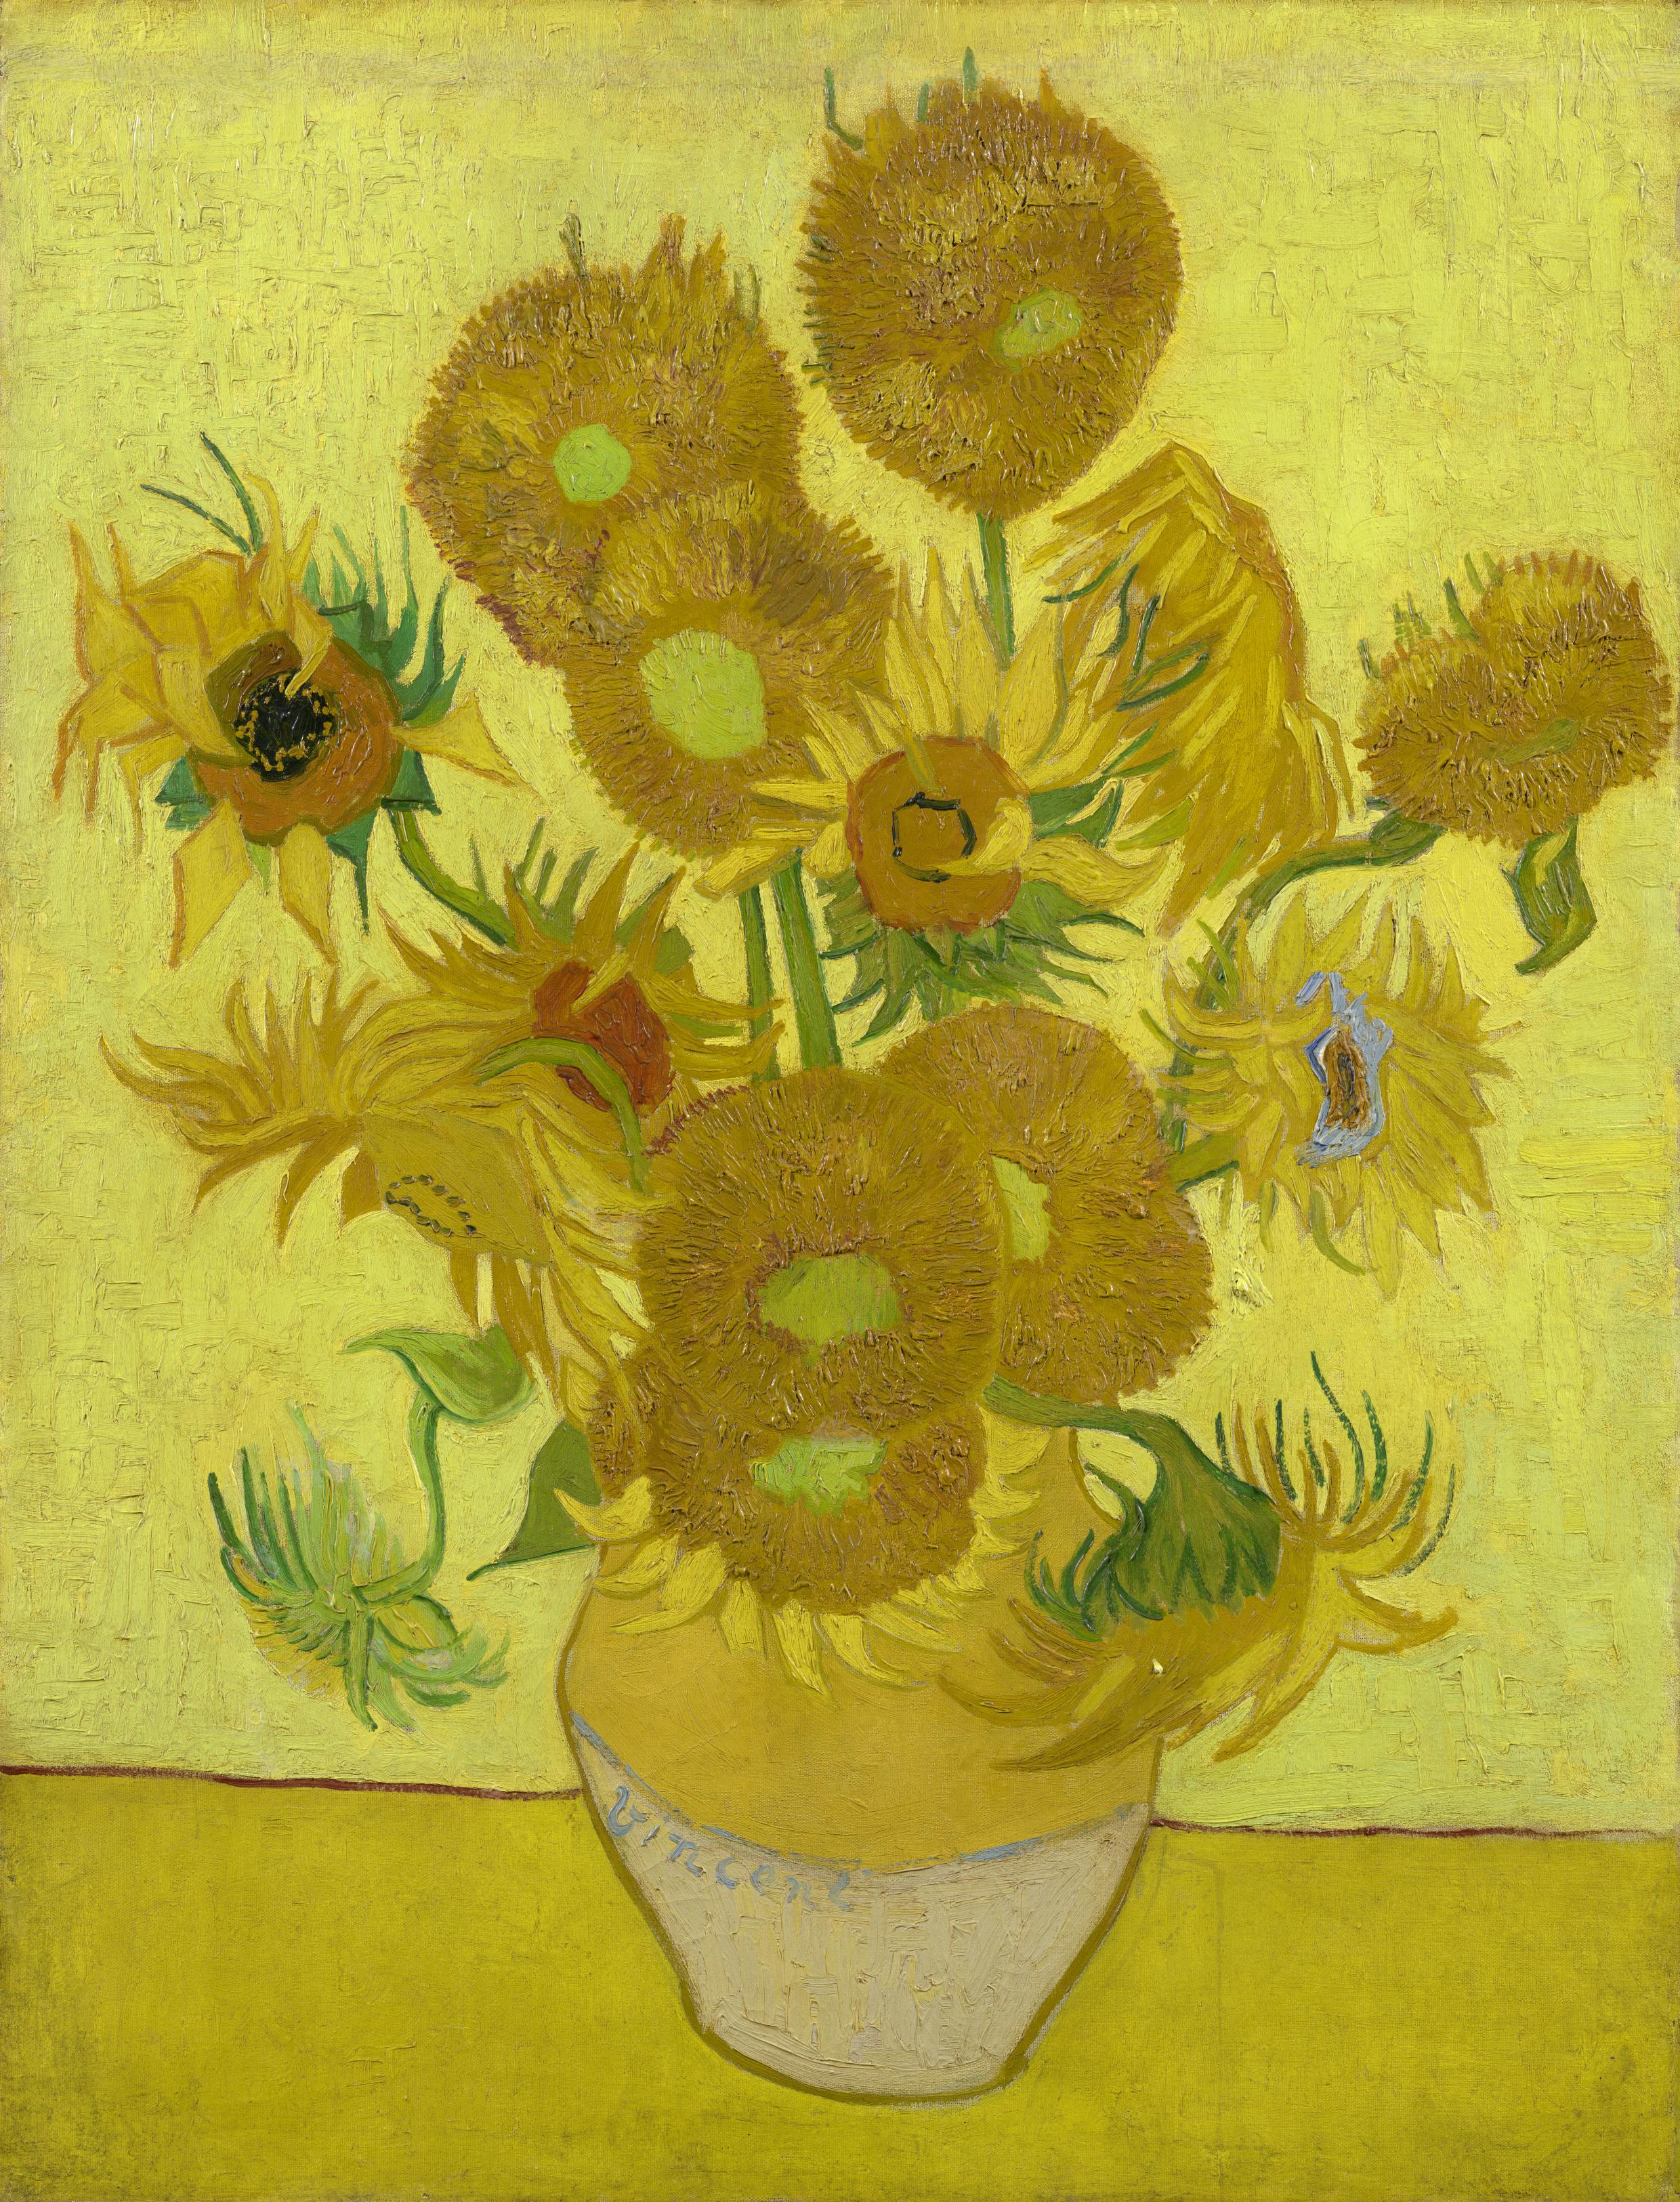 Slunečnice by Vincent van Gogh - Leden 1889 - 95 cm x 73 cm 